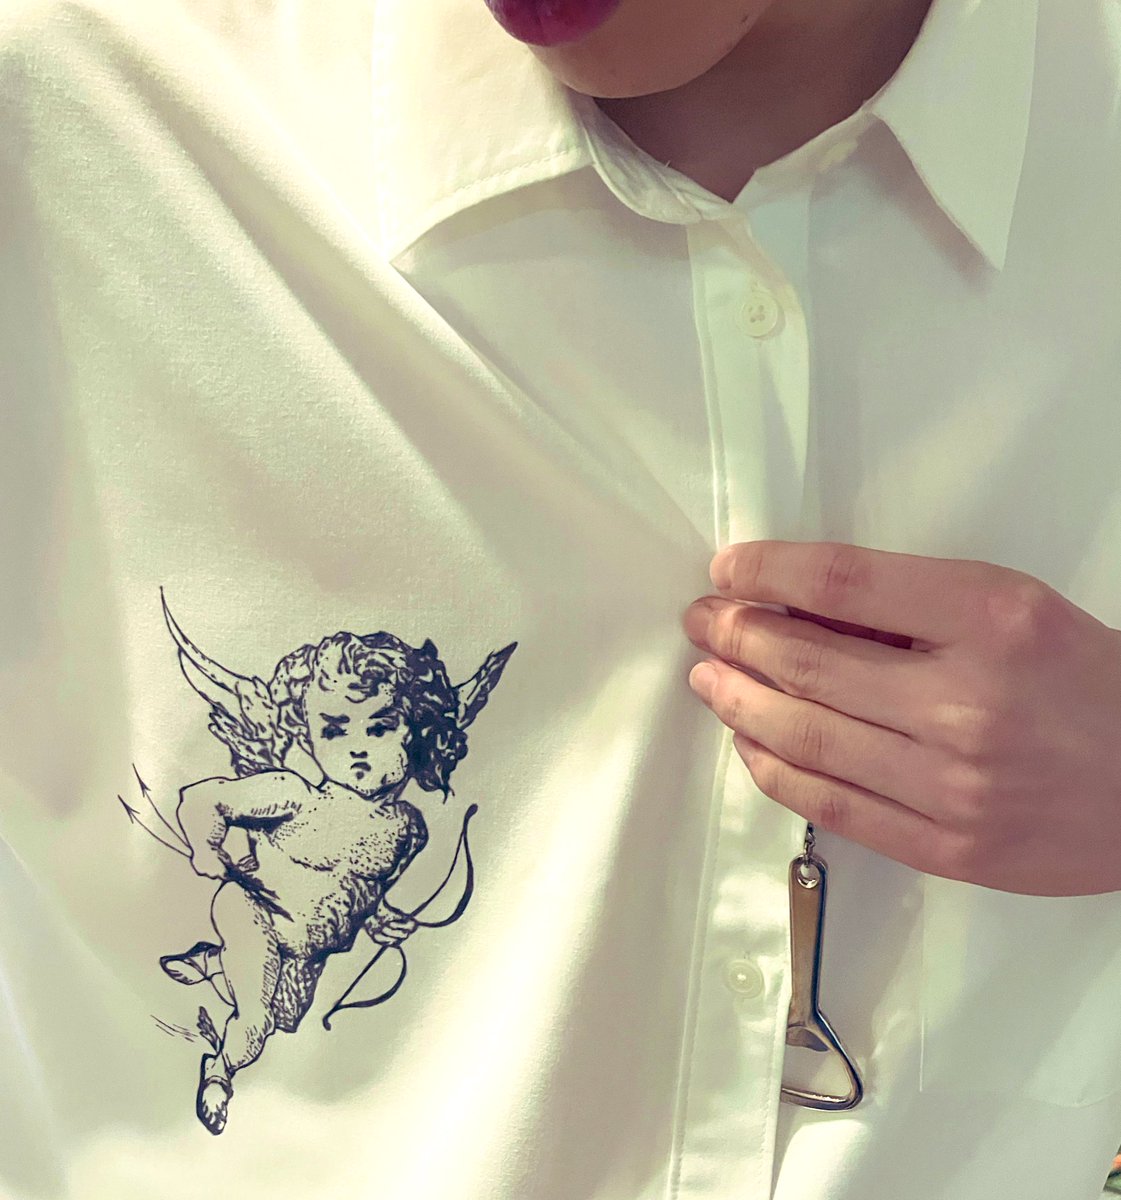 昨日買ったばっかりの白shirt.

帰宅したら…アニーの胸元に
天使が1人宿ってた。

うん、まあ、、許ス笑

#芸大生の日常
#何にでもペイント
#いつの間に描いたの笑